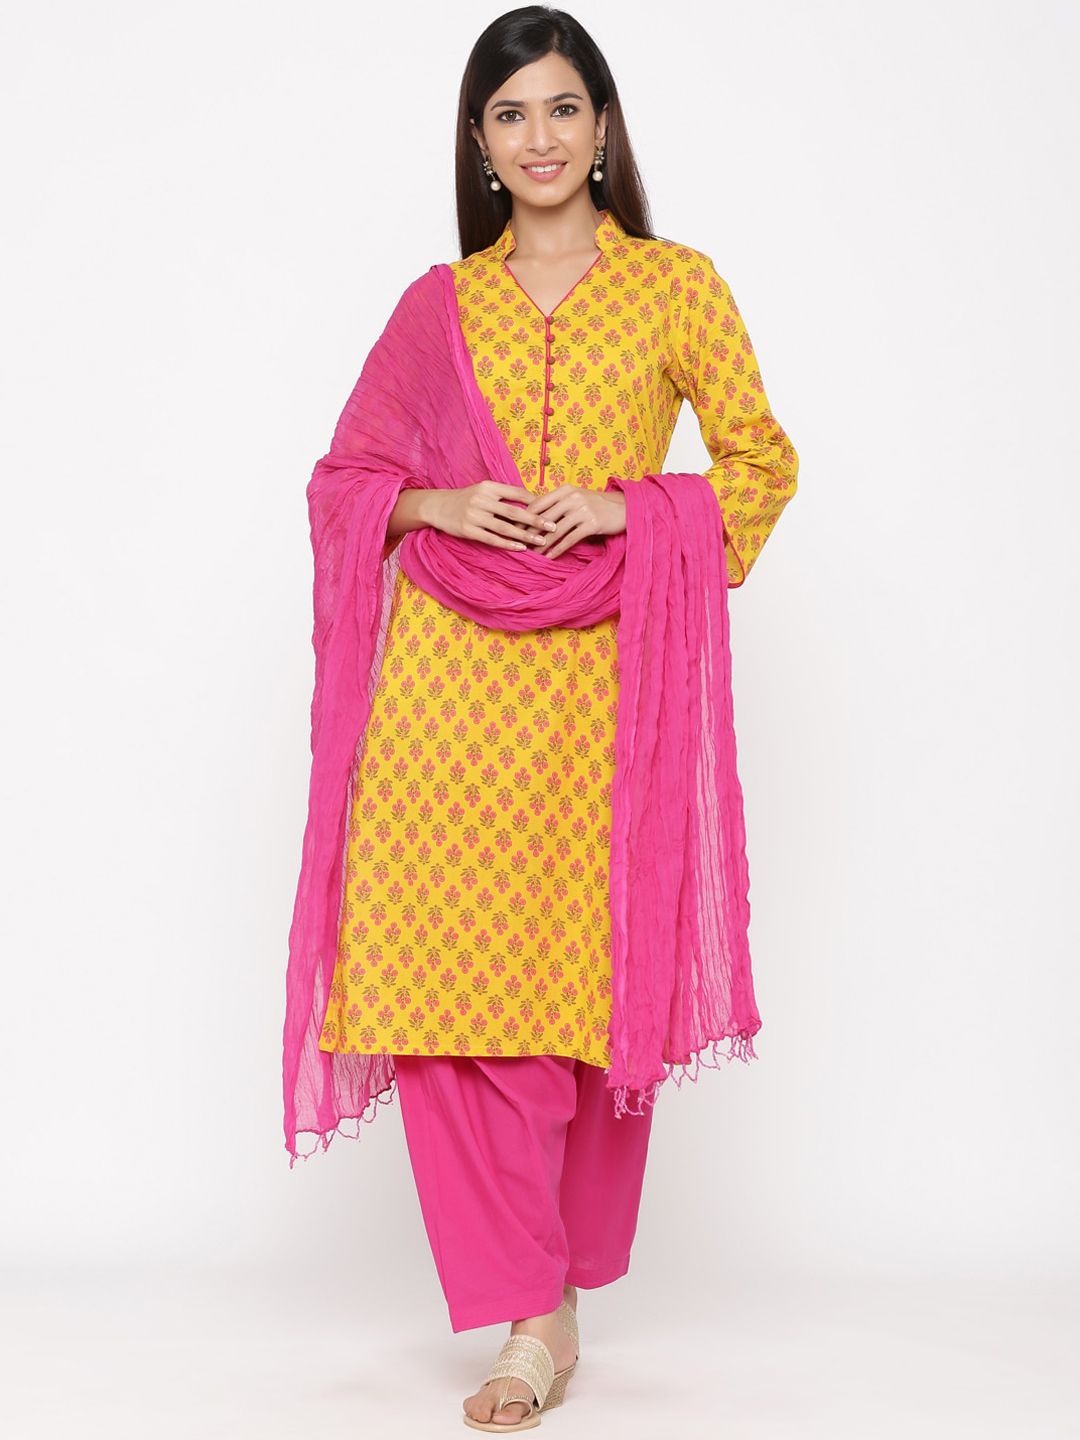 Jaipur Kurti Women Yellow & Pink Floral Printed Kurta with Salwar & Dupatta Price in India